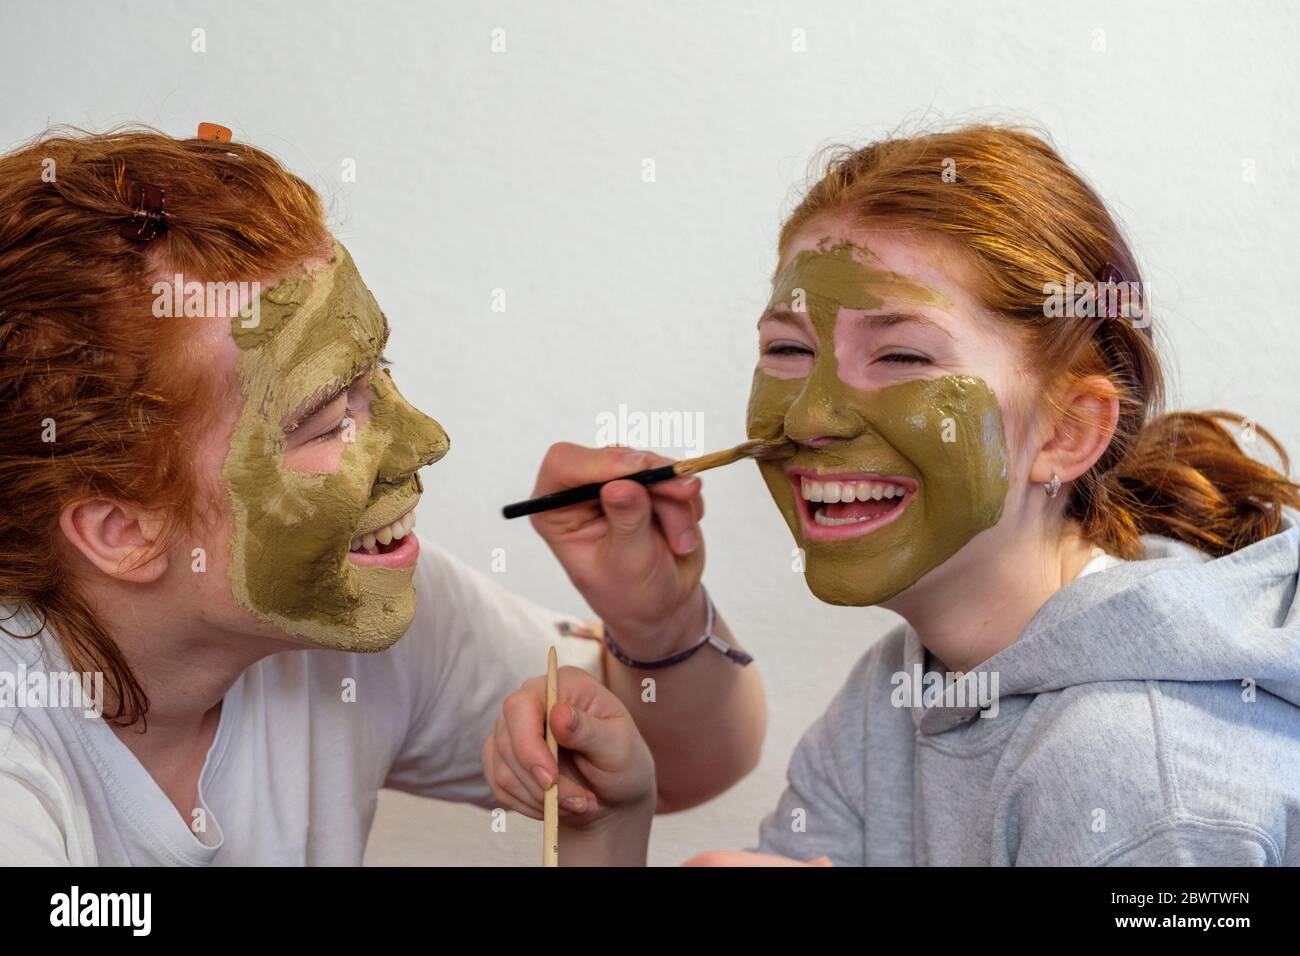 Frère appliquant un masque facial sur le visage de sa sœur Banque D'Images